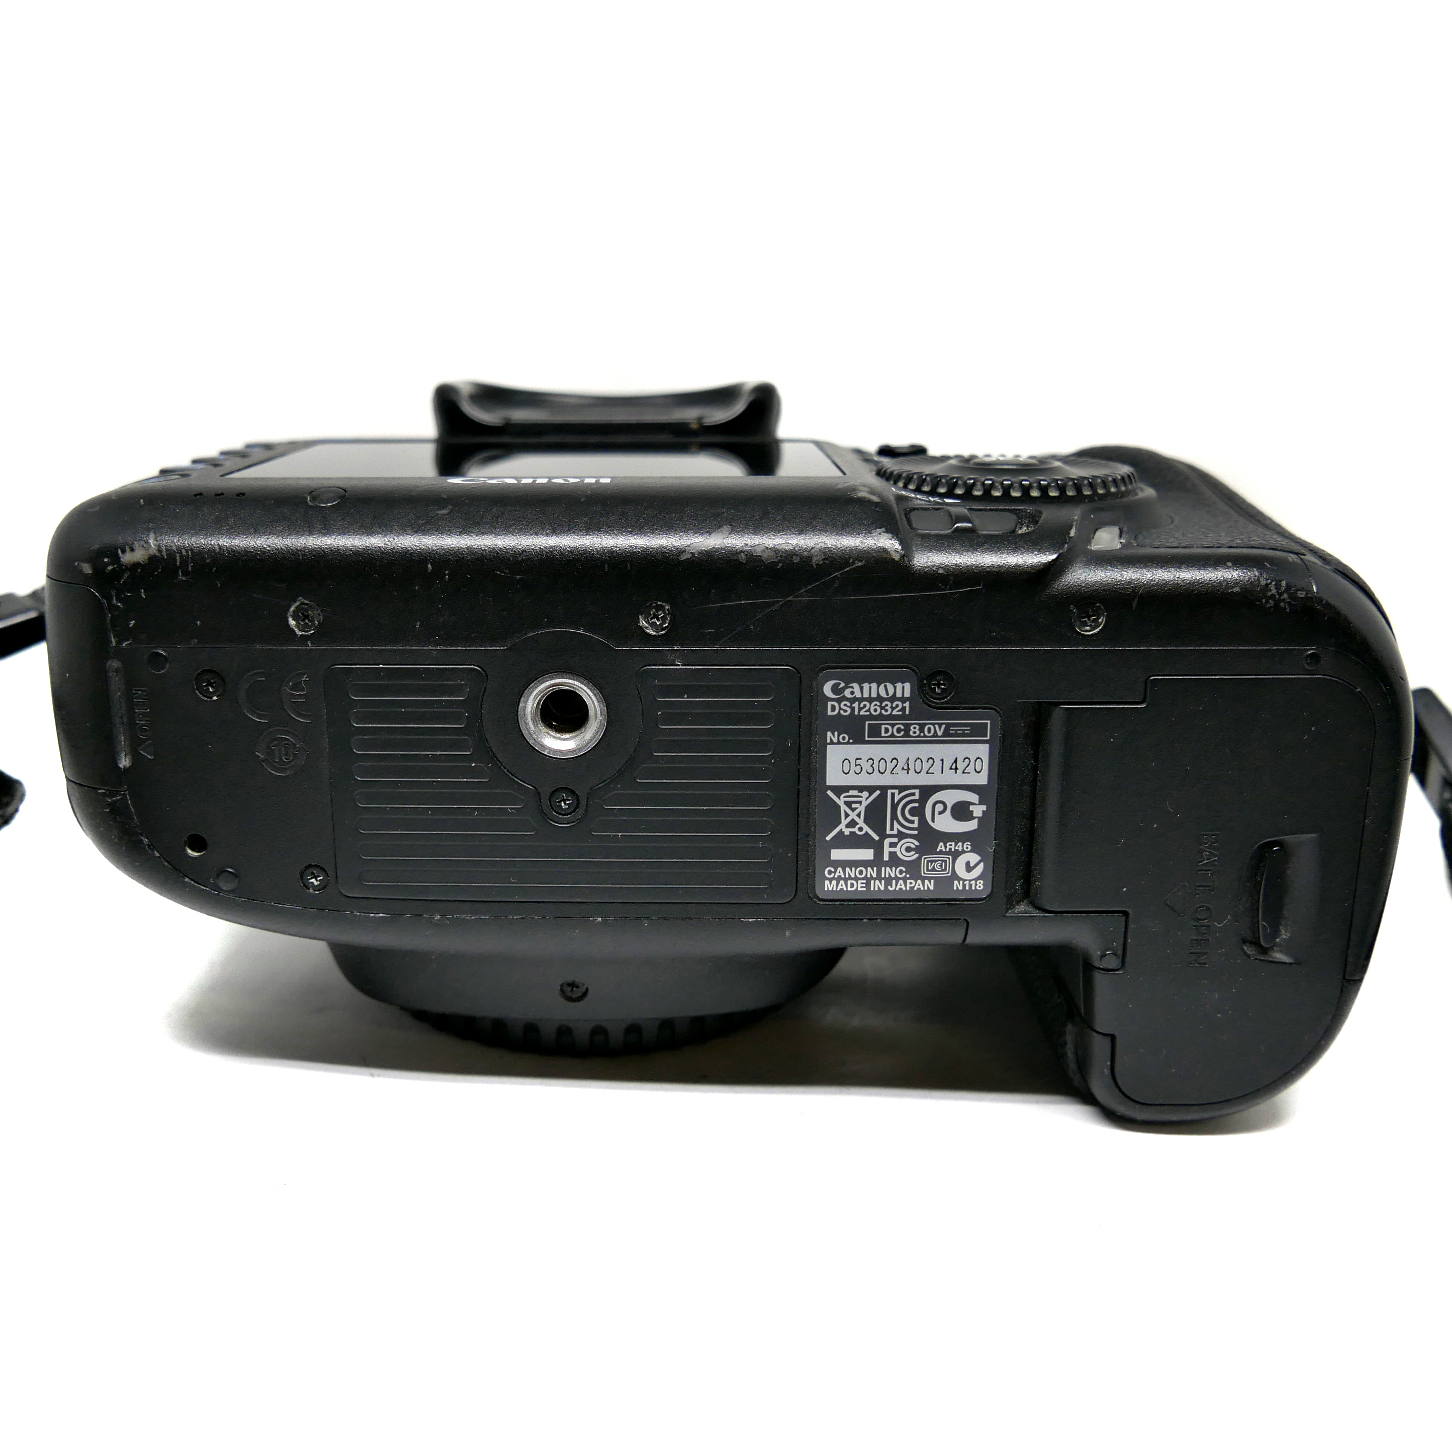 (Myyty) Canon EOS 5D Mark III runko (SC:27590) (käytetty)